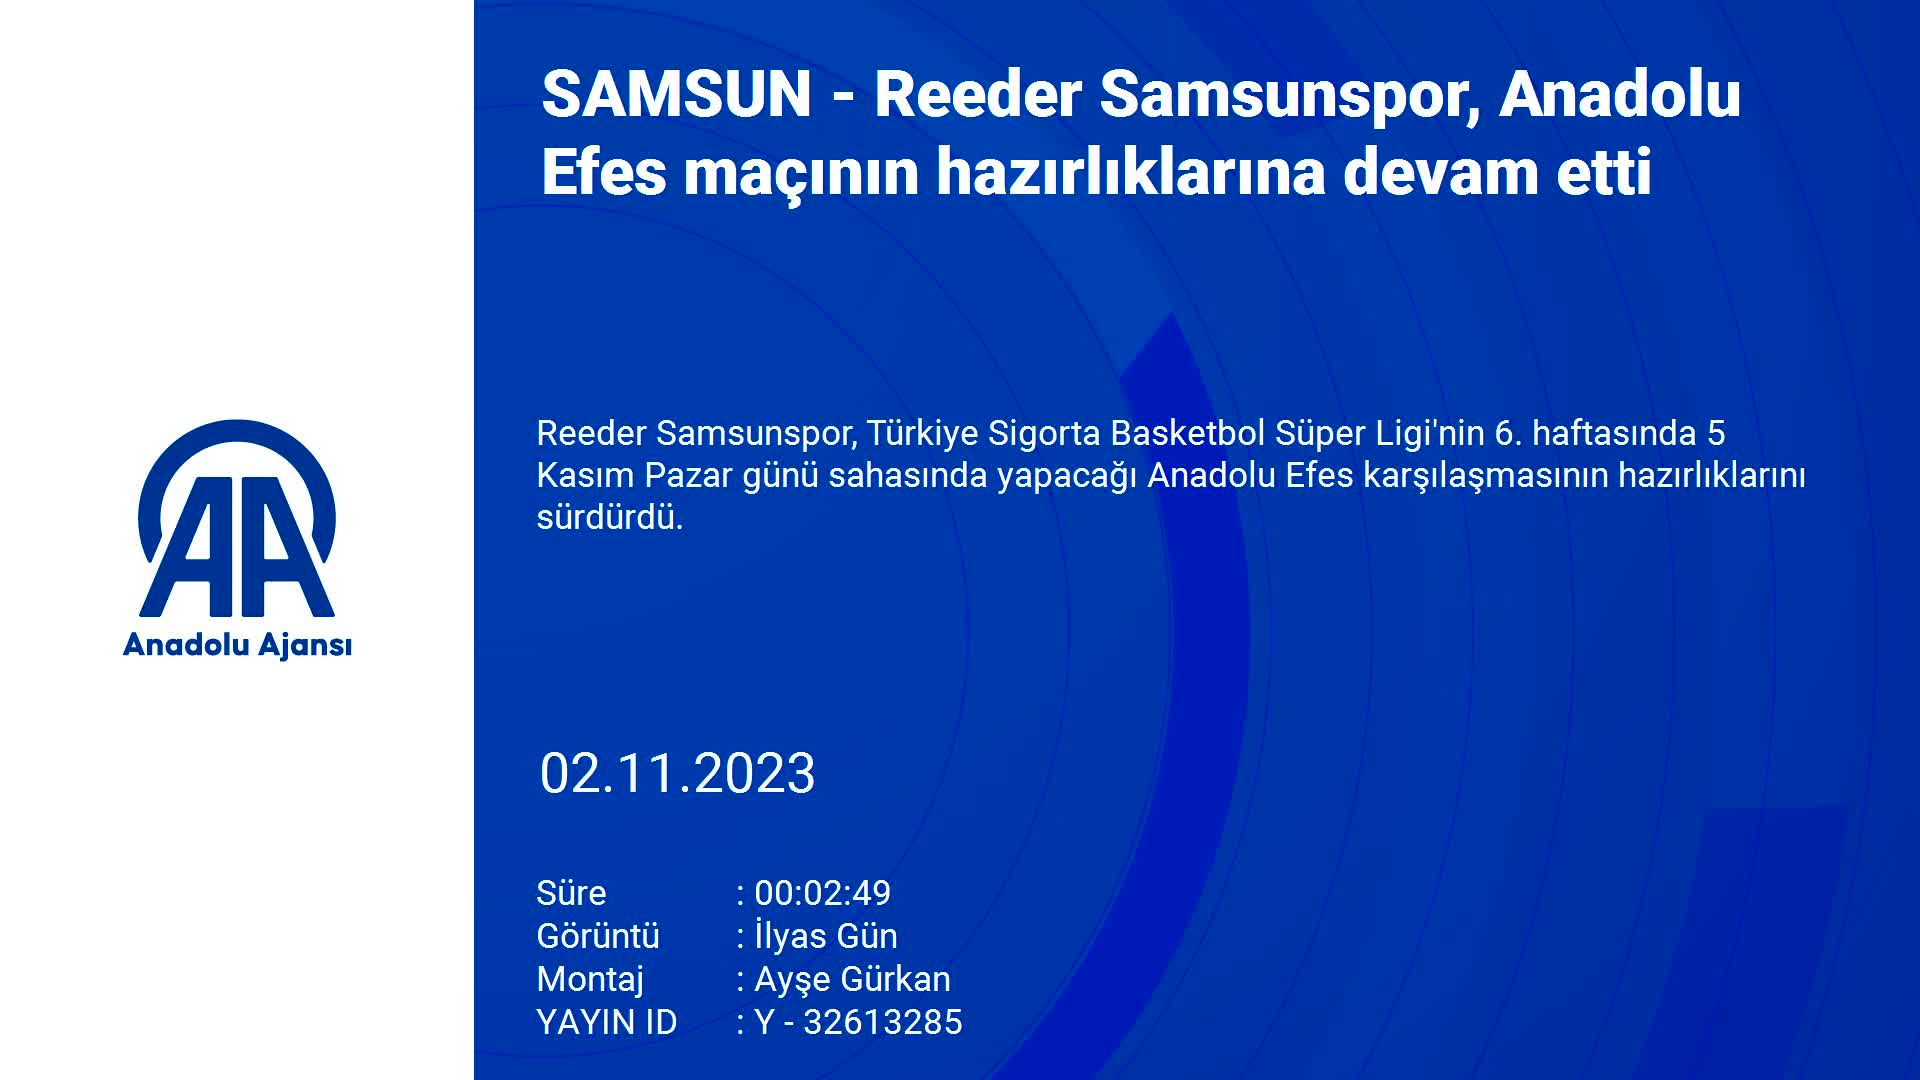 Reeder Samsunspor, Anadolu Efes maçının hazırlıklarına devam etti